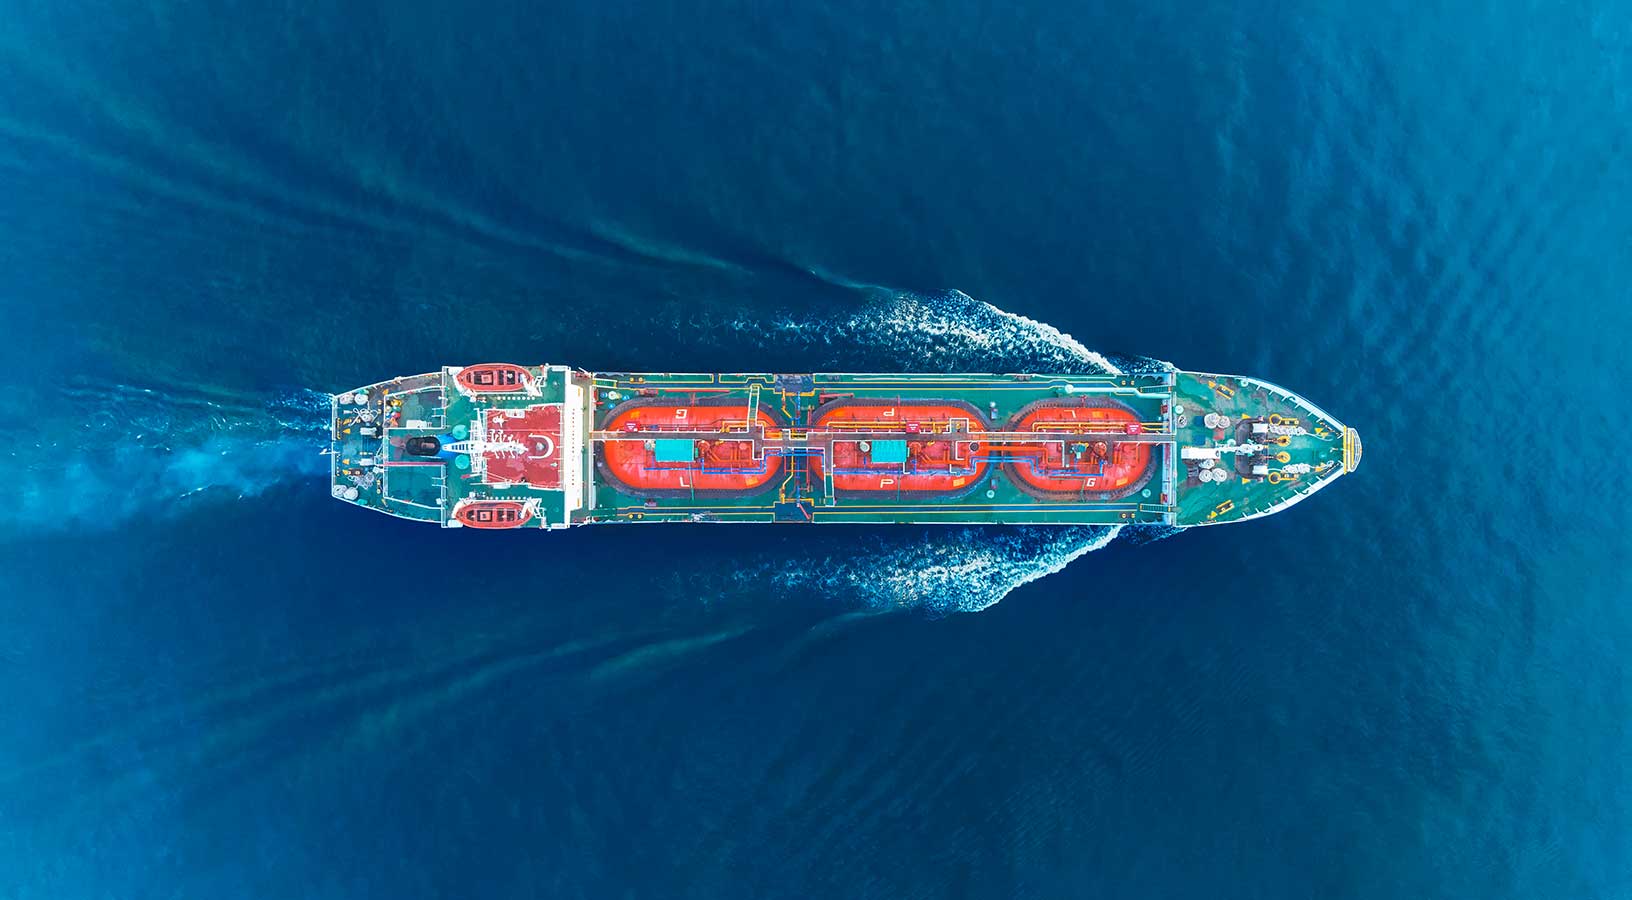 Vista aérea de un buque de dragado que se desplaza a la derecha de la imagen.